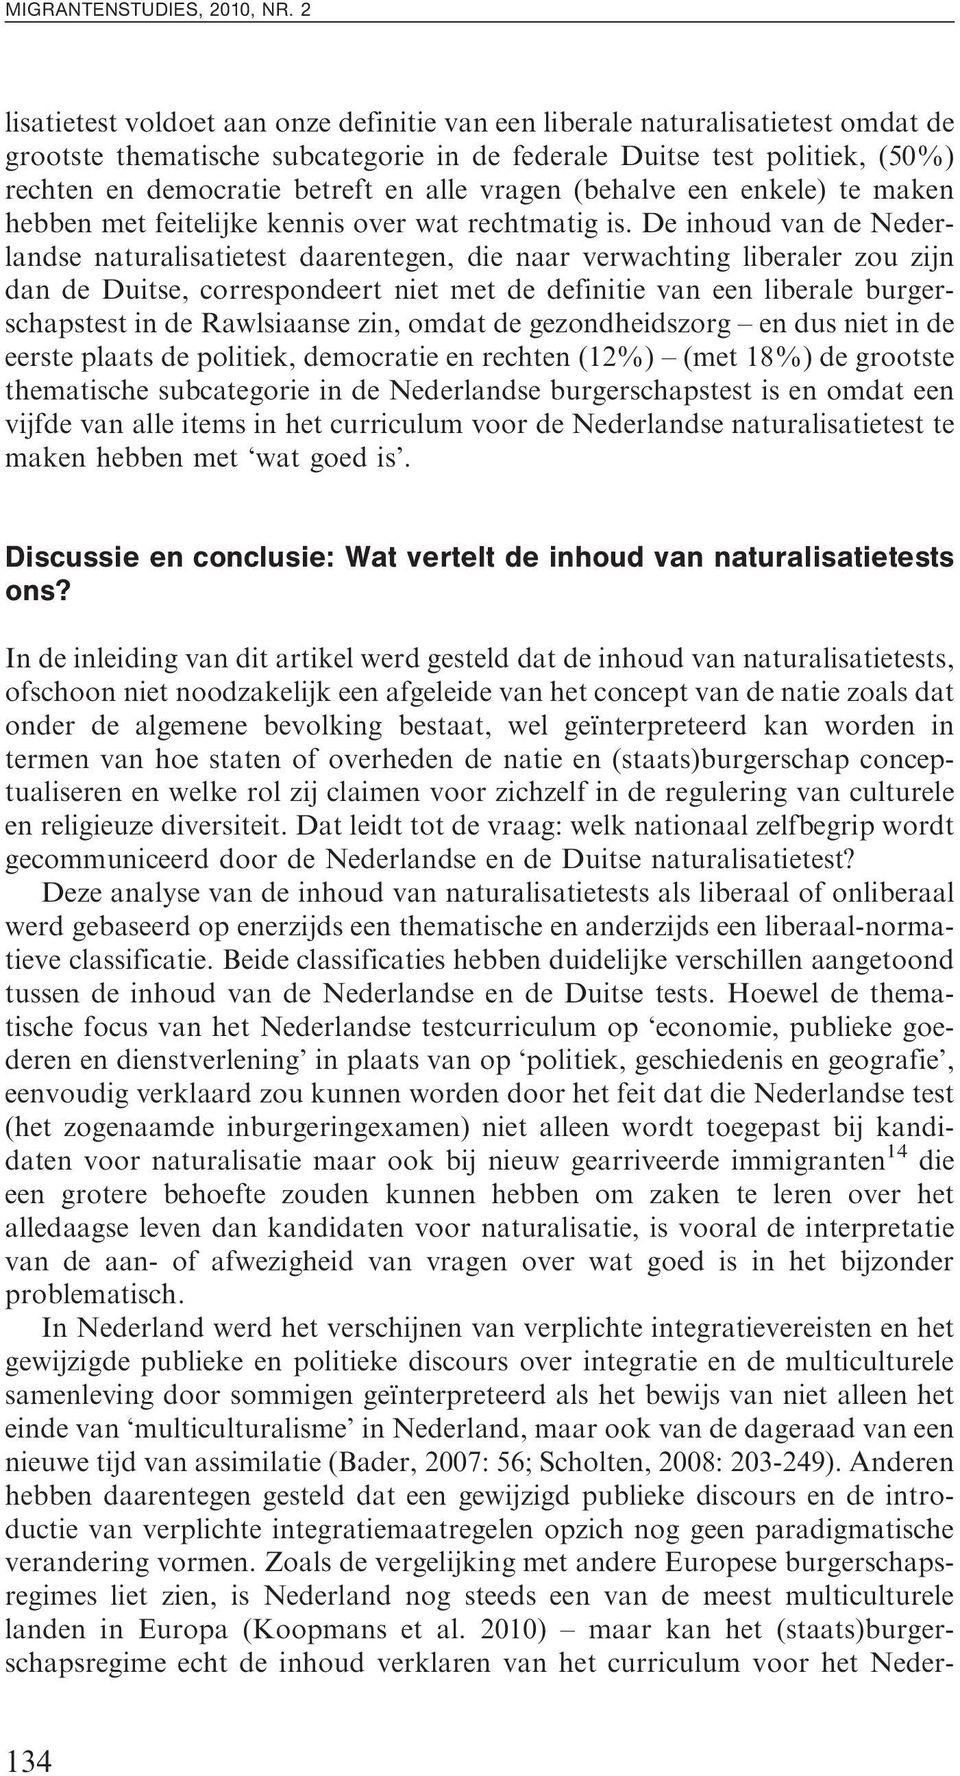 De inhoud van de Nederlandse naturalisatietest daarentegen, die naar verwachting liberaler zou zijn dan de Duitse, correspondeert niet met de definitie van een liberale burgerschapstest in de